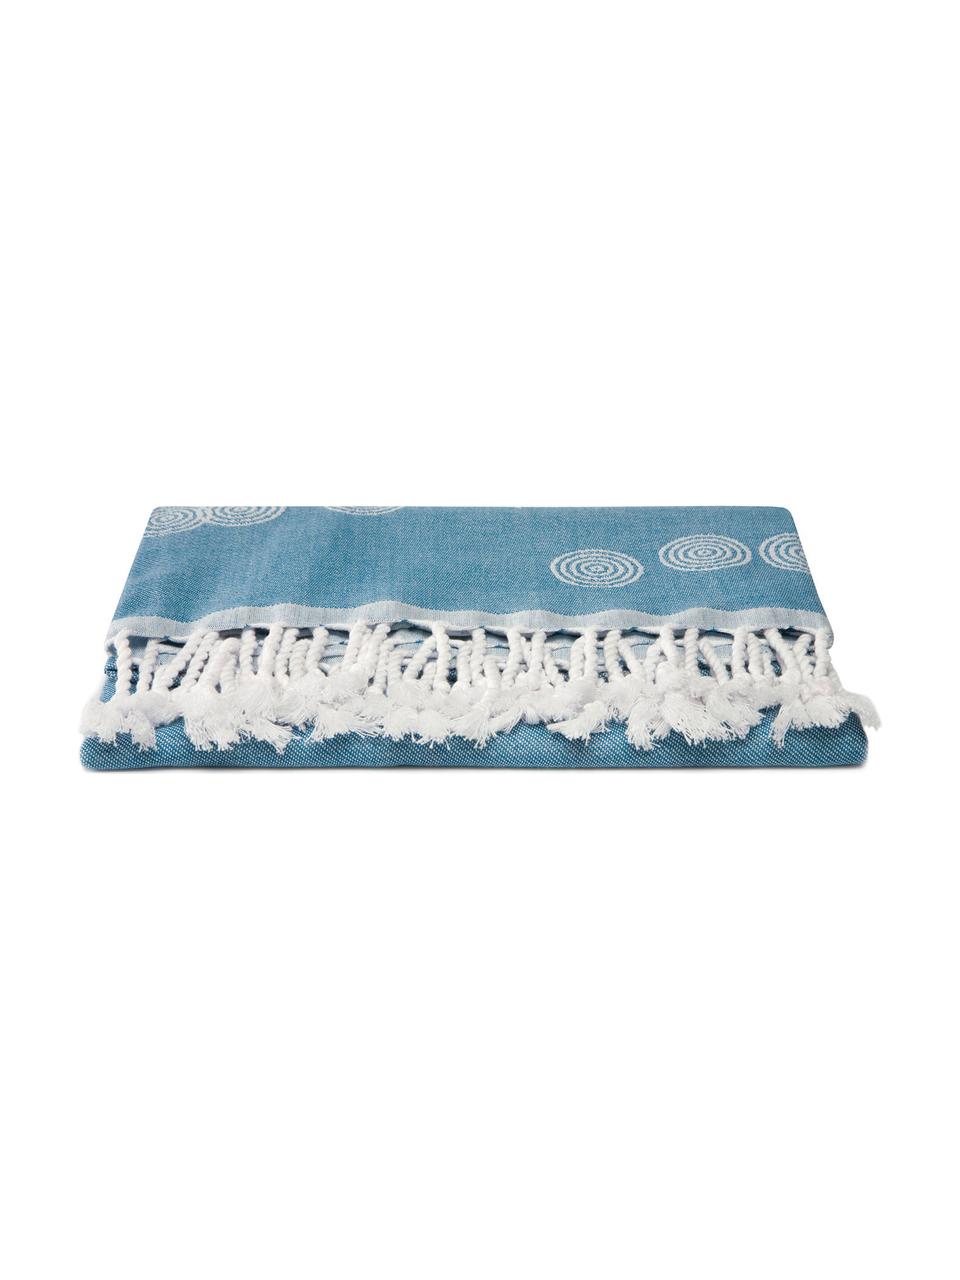 Hamamtuch Pisces, 100% Baumwolle
leichte Stoffqualität, 210 g/m², Blau, Weiß, 90 x 180 cm